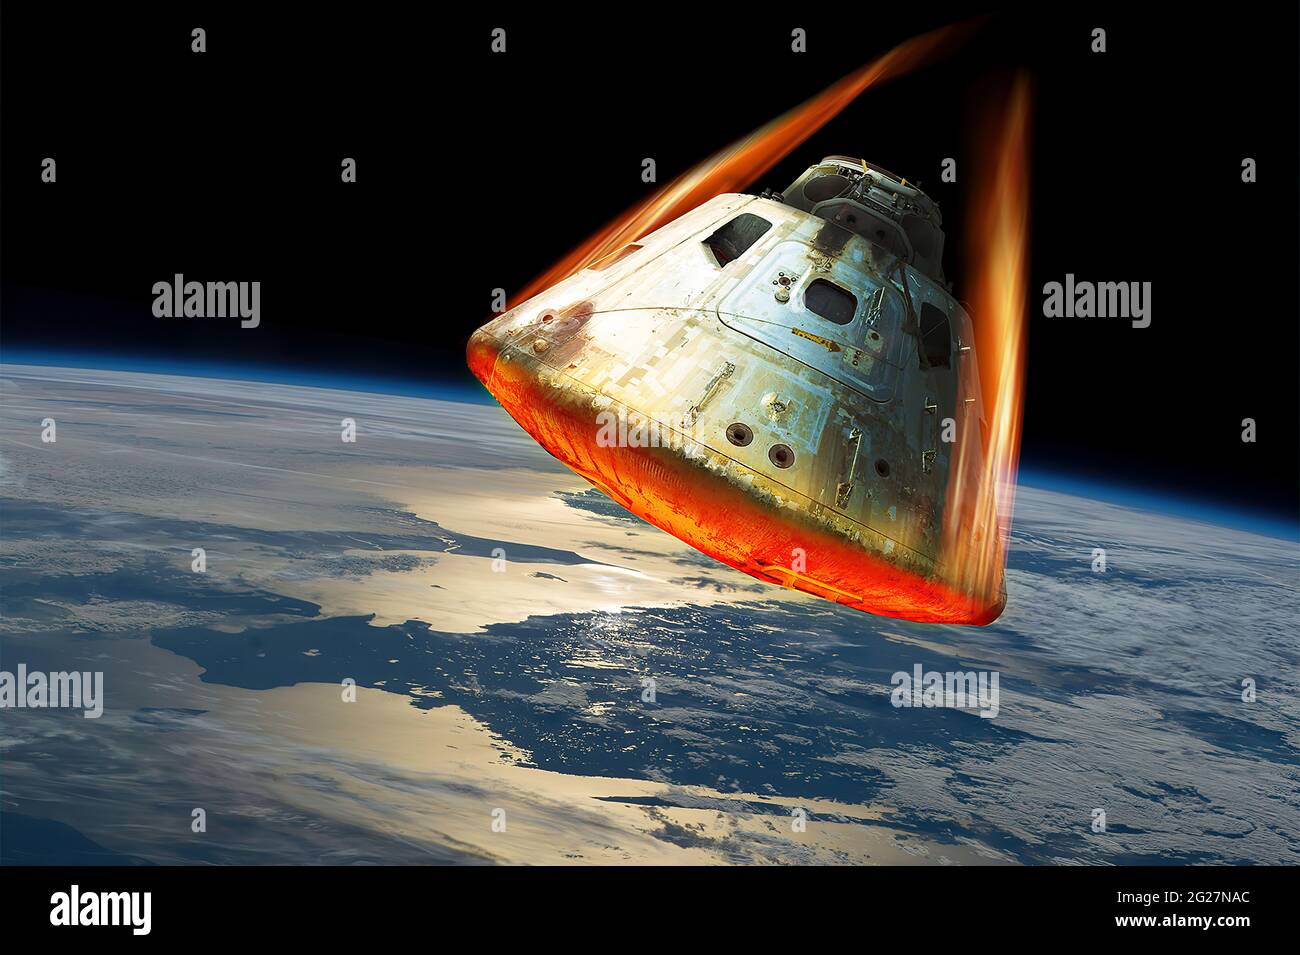 Eine Raumkapsel gelangt wieder in die Erdatmosphäre, während ihr Hitzeschild von der Hitze leuchtet. Stockfoto